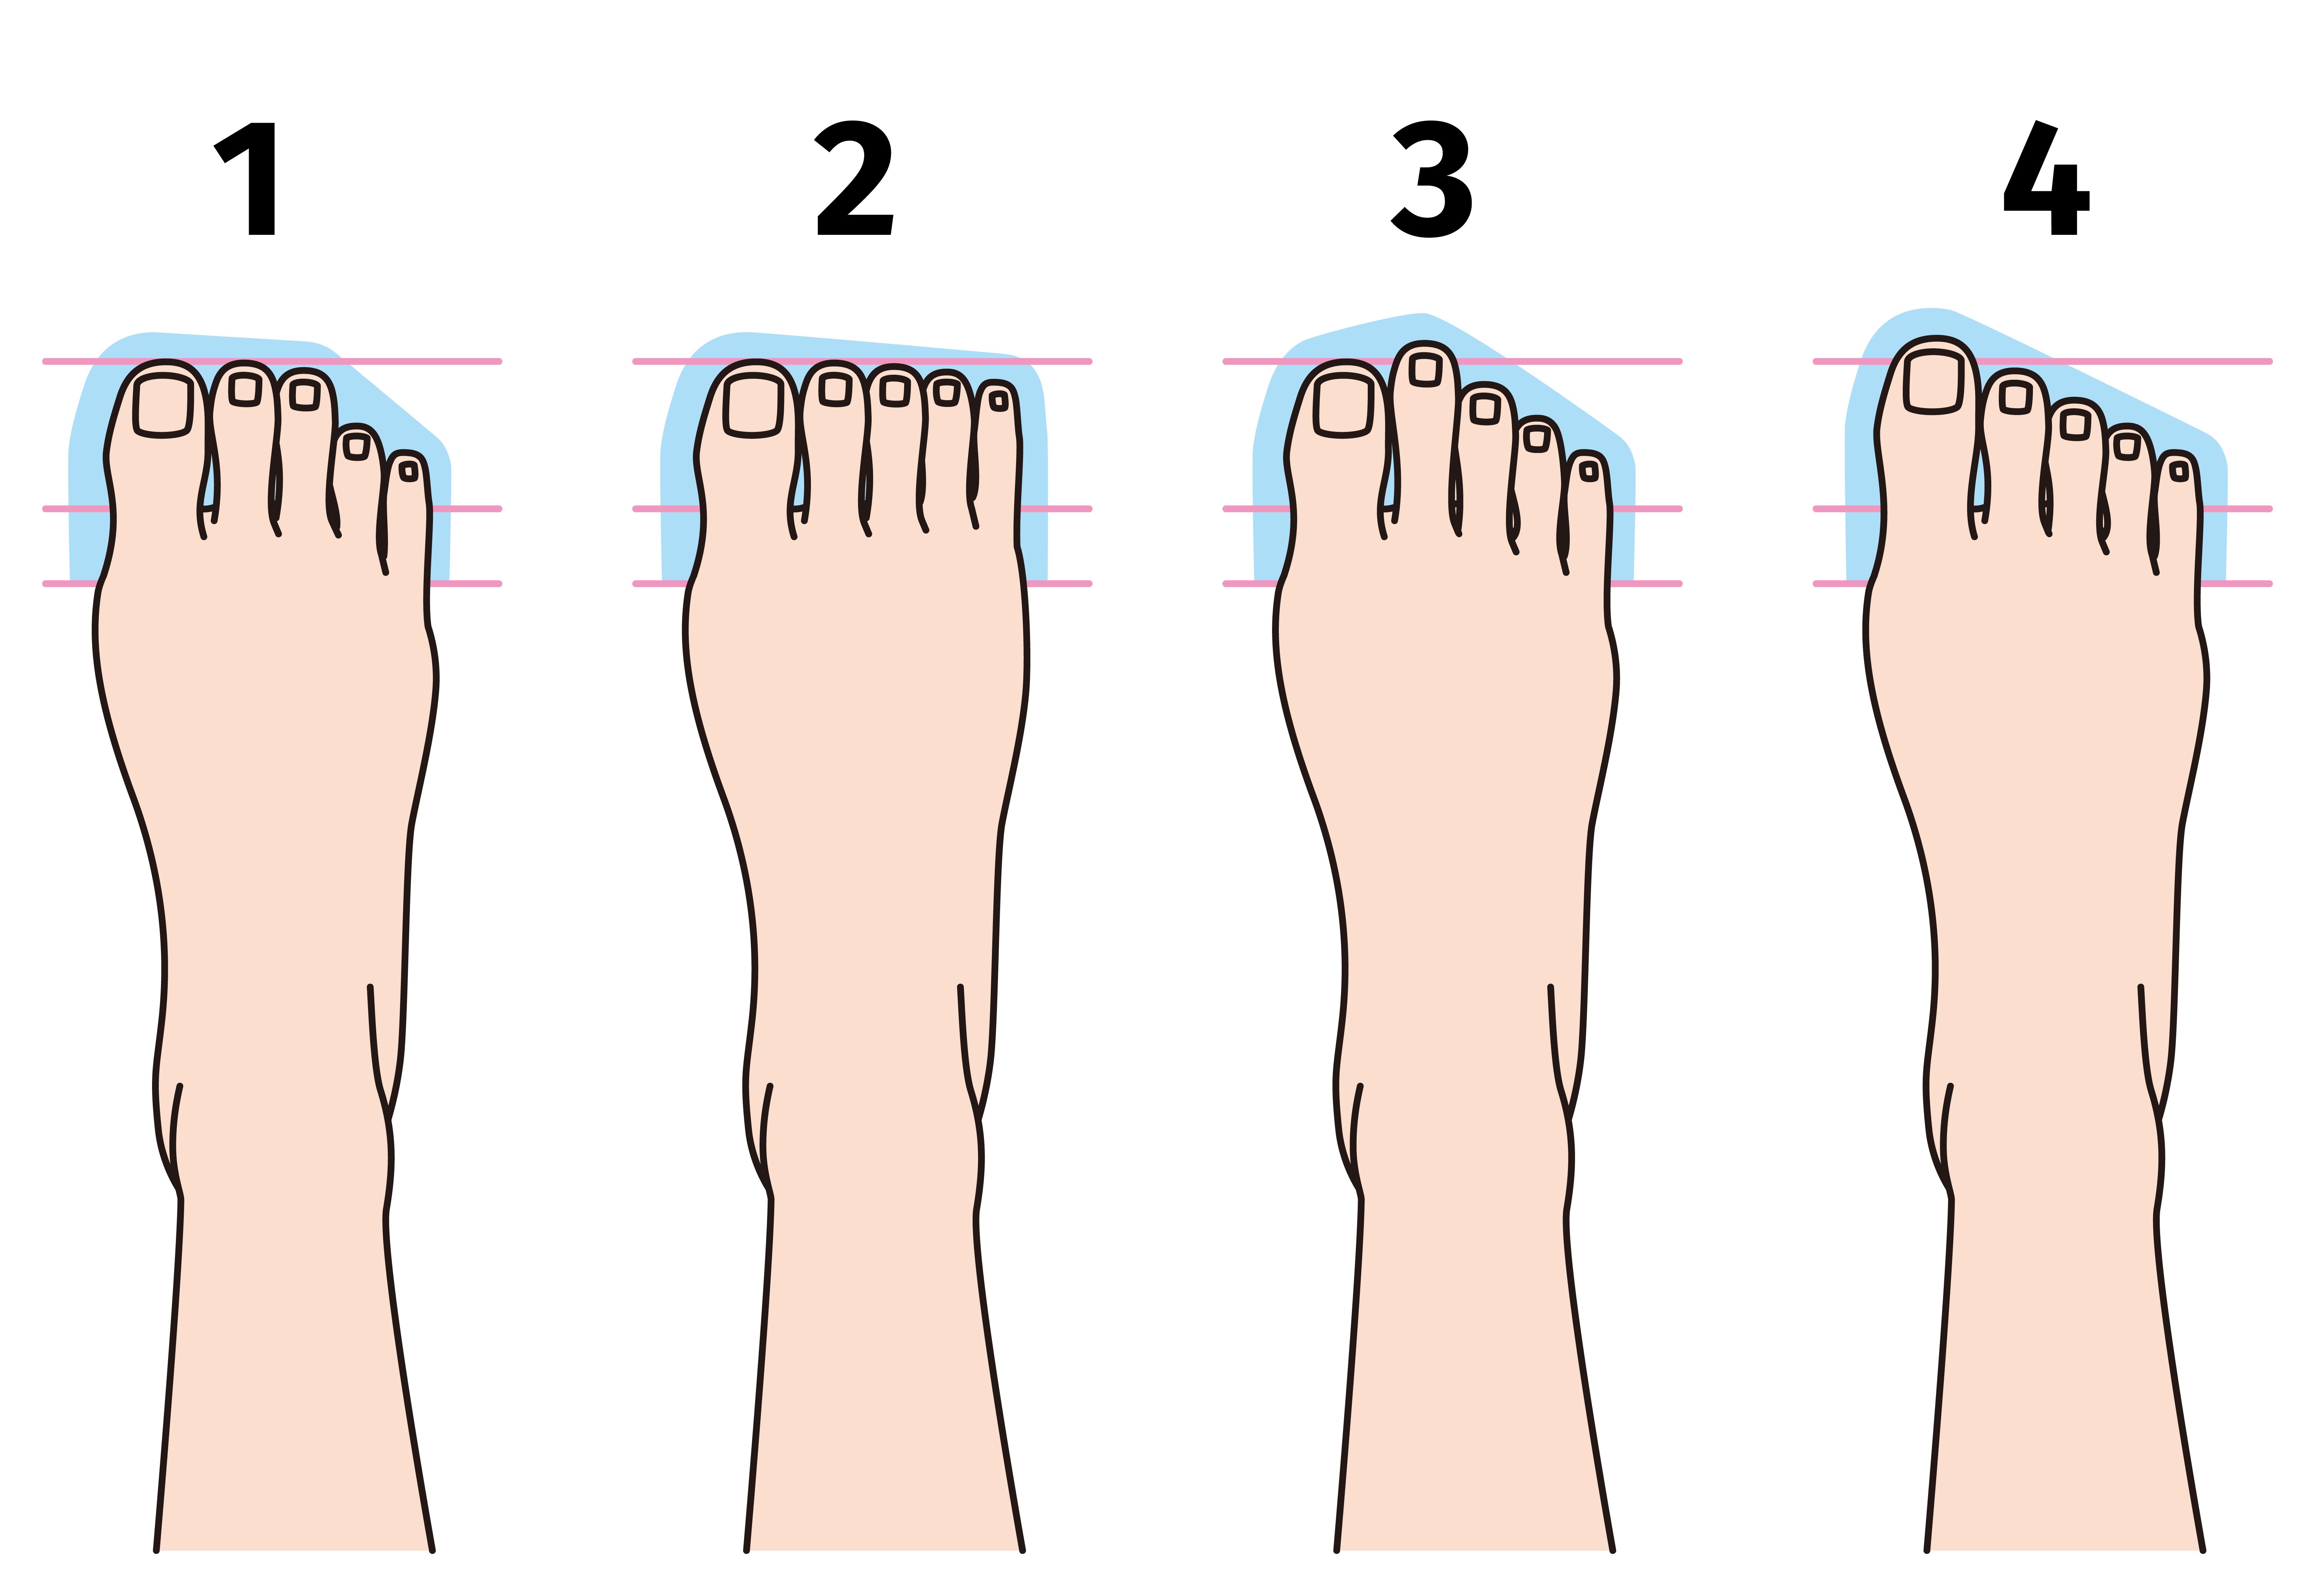 Kształt stóp i ustawienie palców zdradzają osobowość. Sprawdź, co mówią o  tobie twoje stopy - Zdrowie